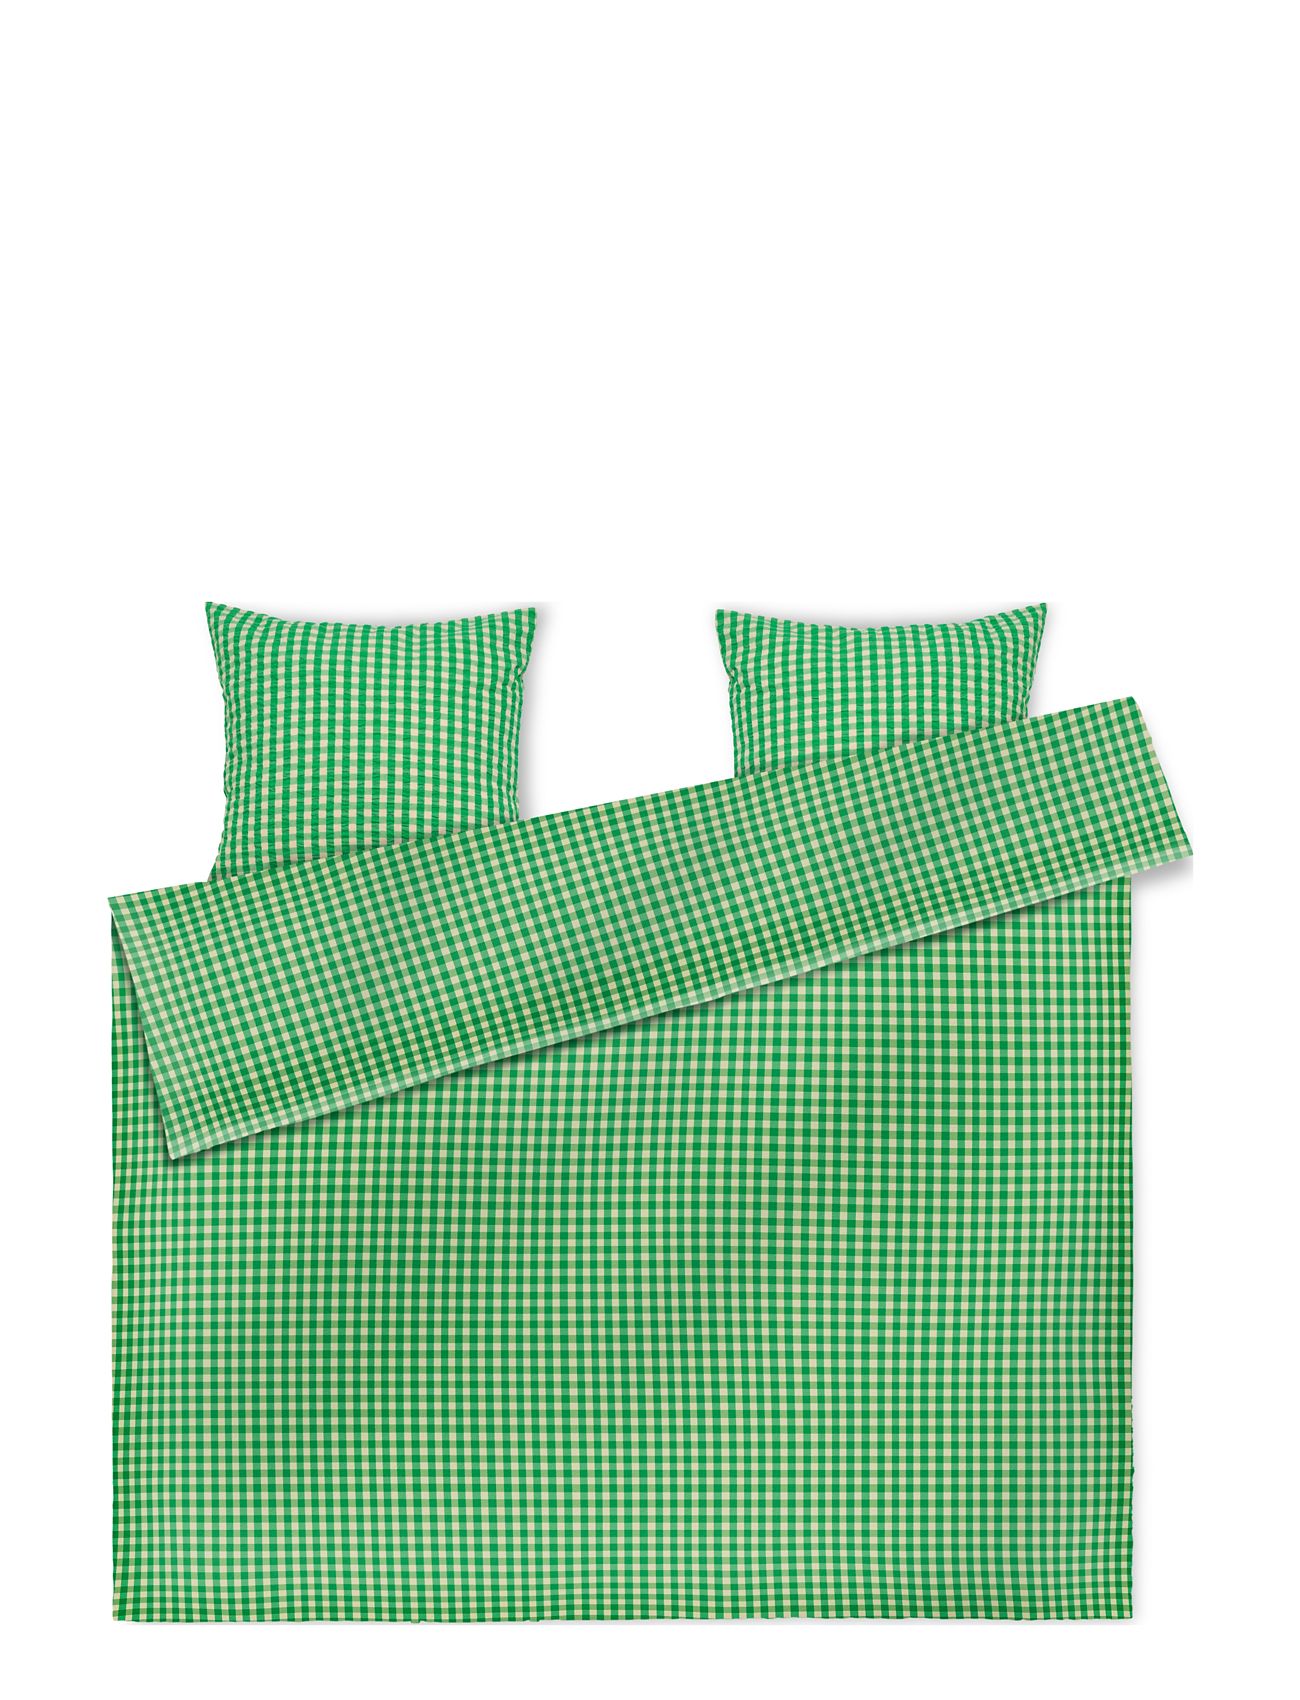 Bæk&Bølge Sengetøj 200X220 Cm Dk Home Textiles Bedtextiles Bed Sets Green Juna